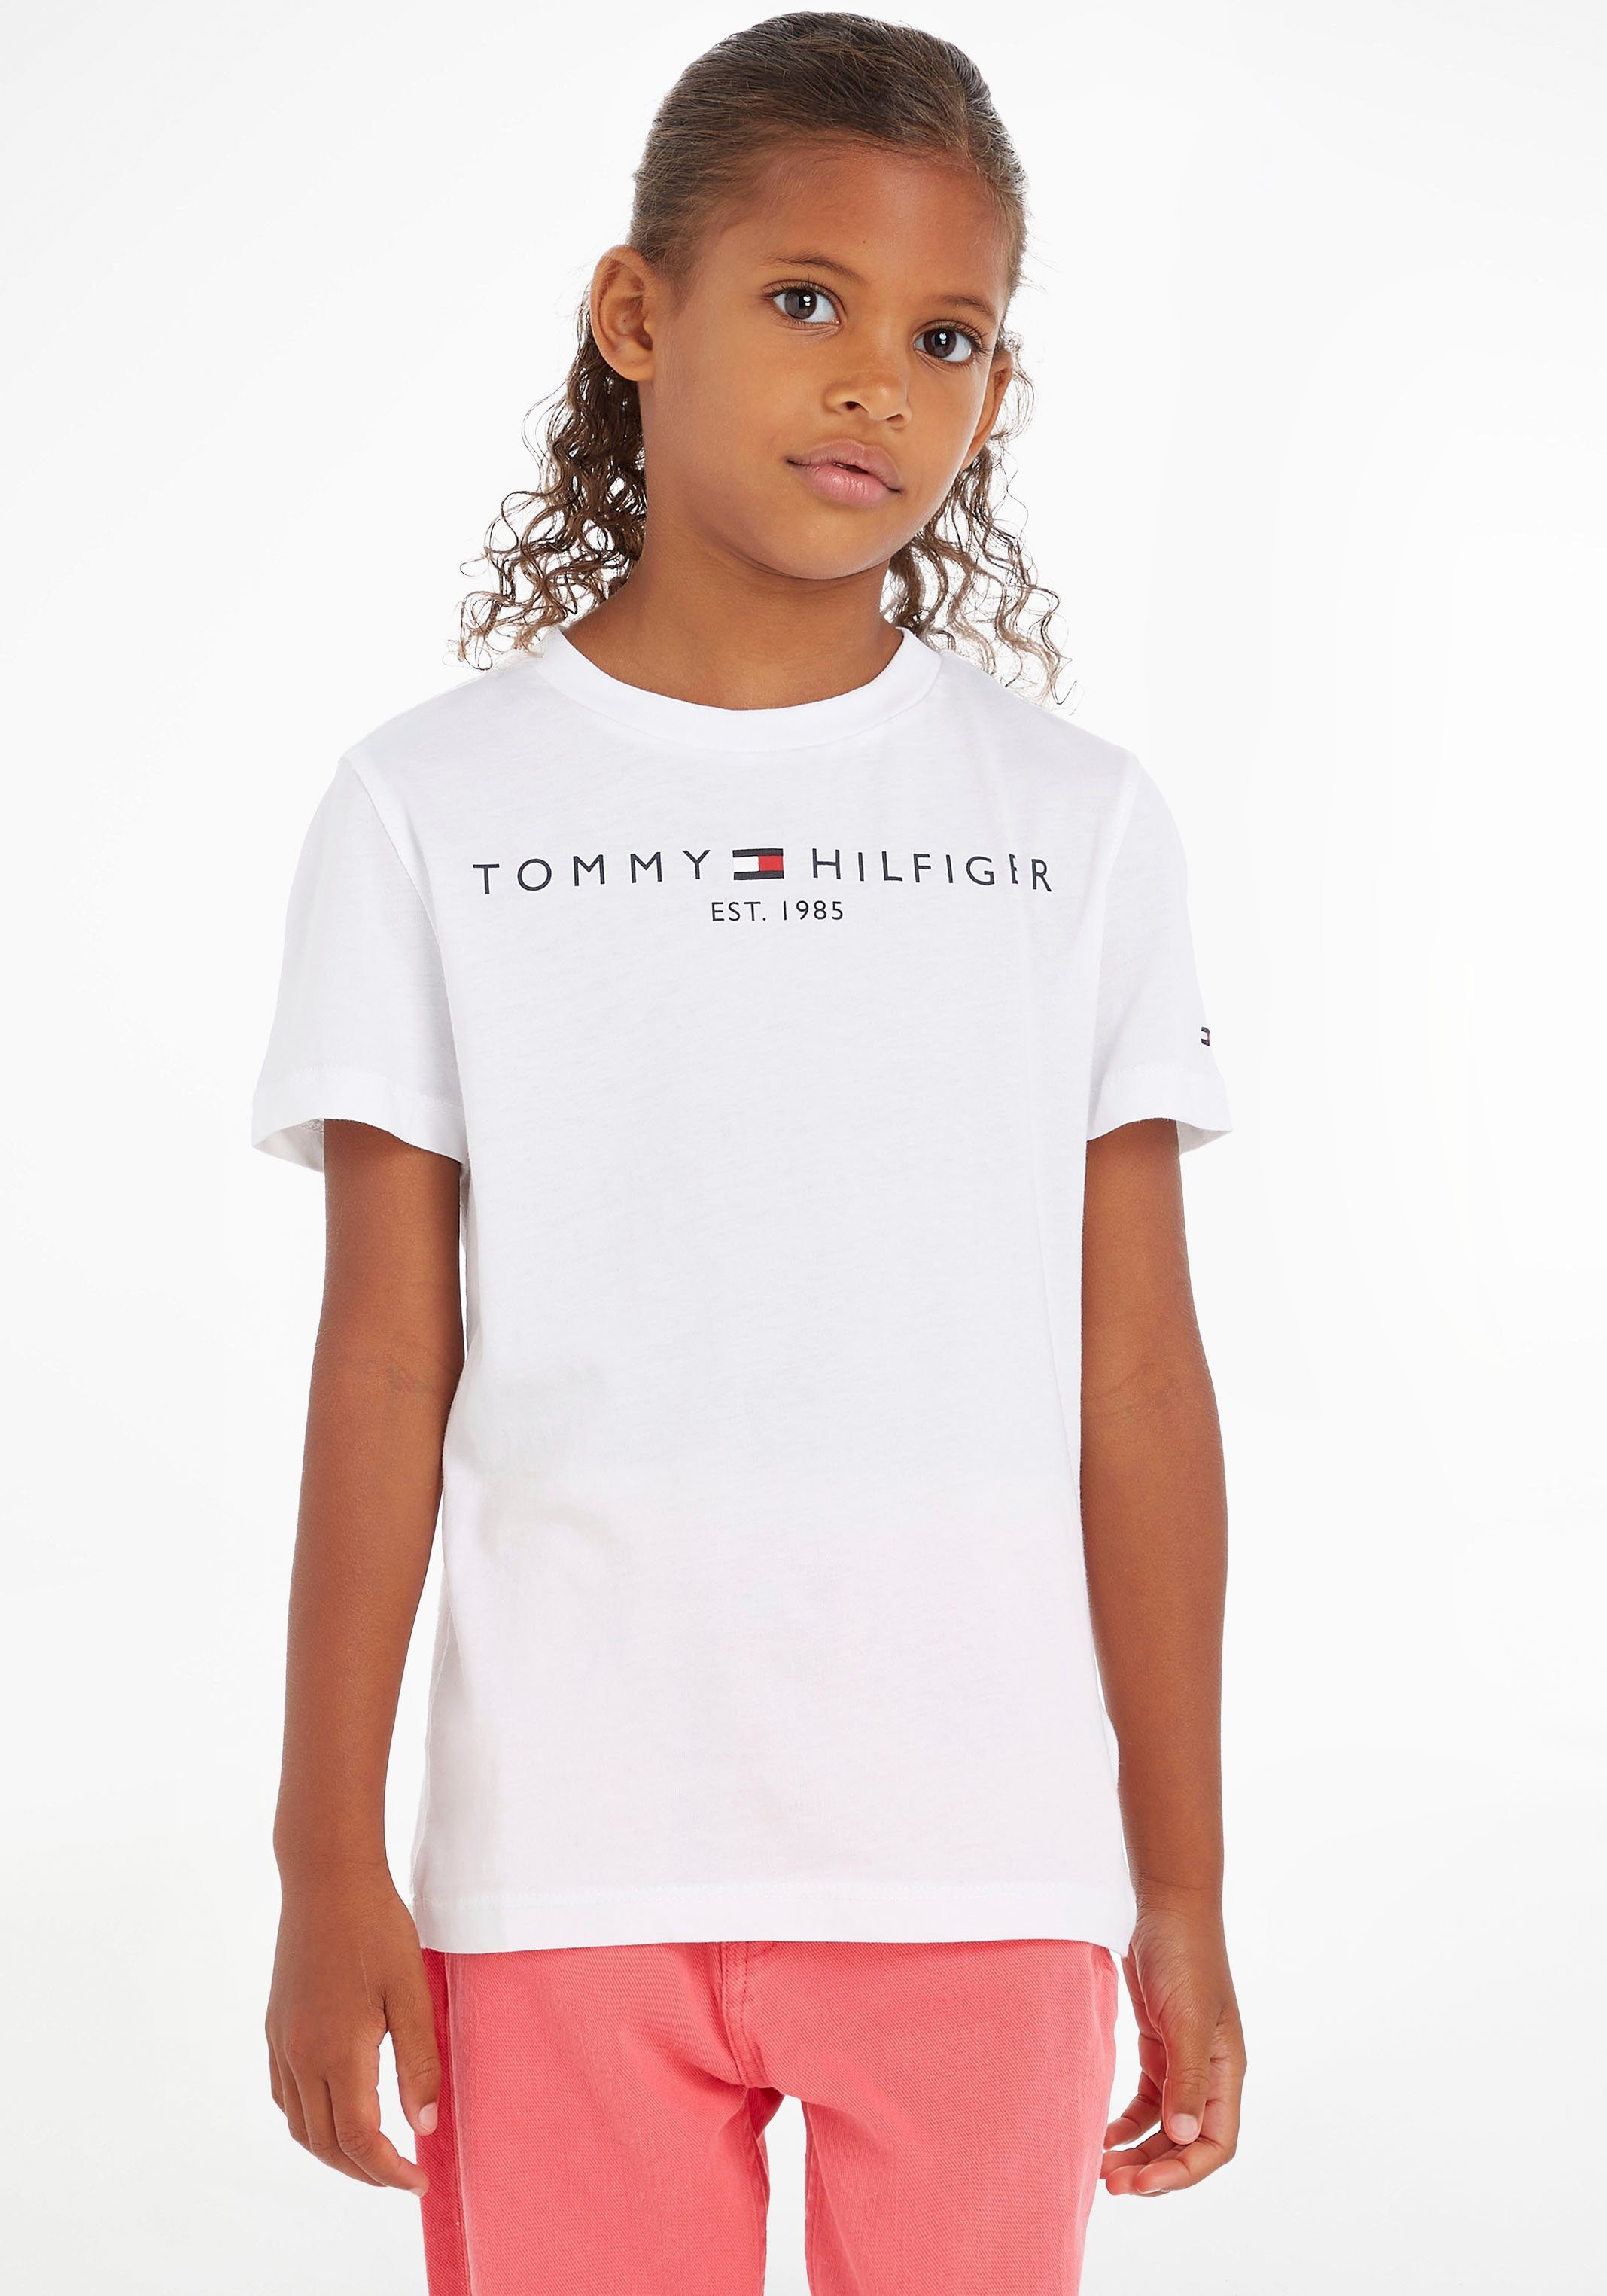 Tommy Hilfiger und Kids TEE MiniMe,für ESSENTIAL Junior Jungen Kinder T-Shirt Mädchen